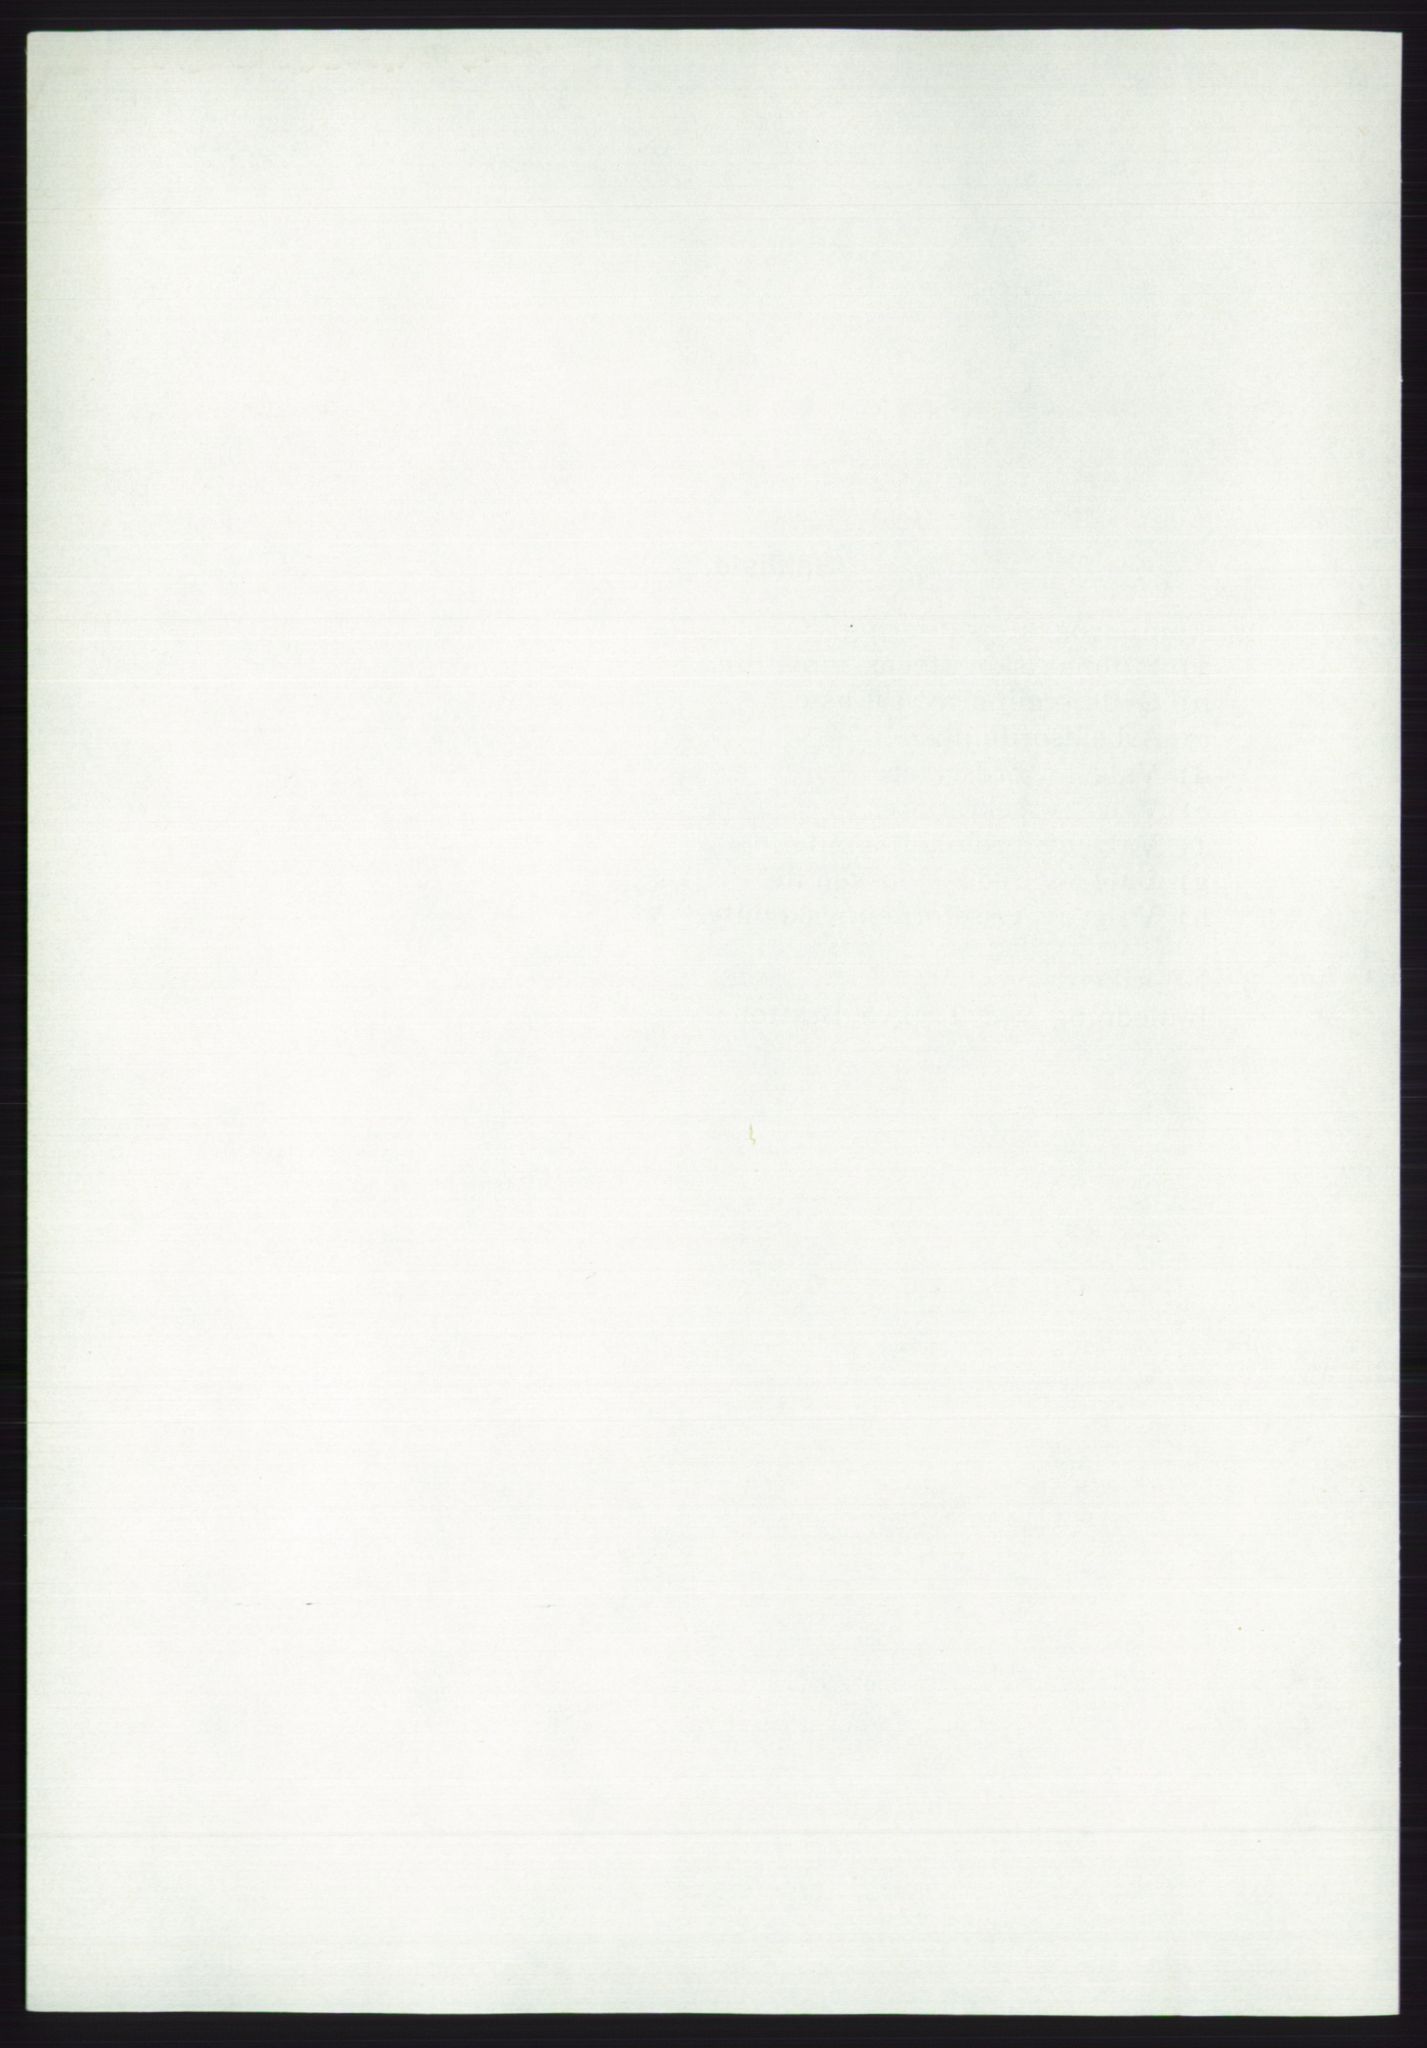 Det norske Arbeiderparti - publikasjoner, AAB/-/-/-: Protokoll over forhandlingene på det ekstraordinære landsmøte 21.-22. april 1972, 1972, s. 6